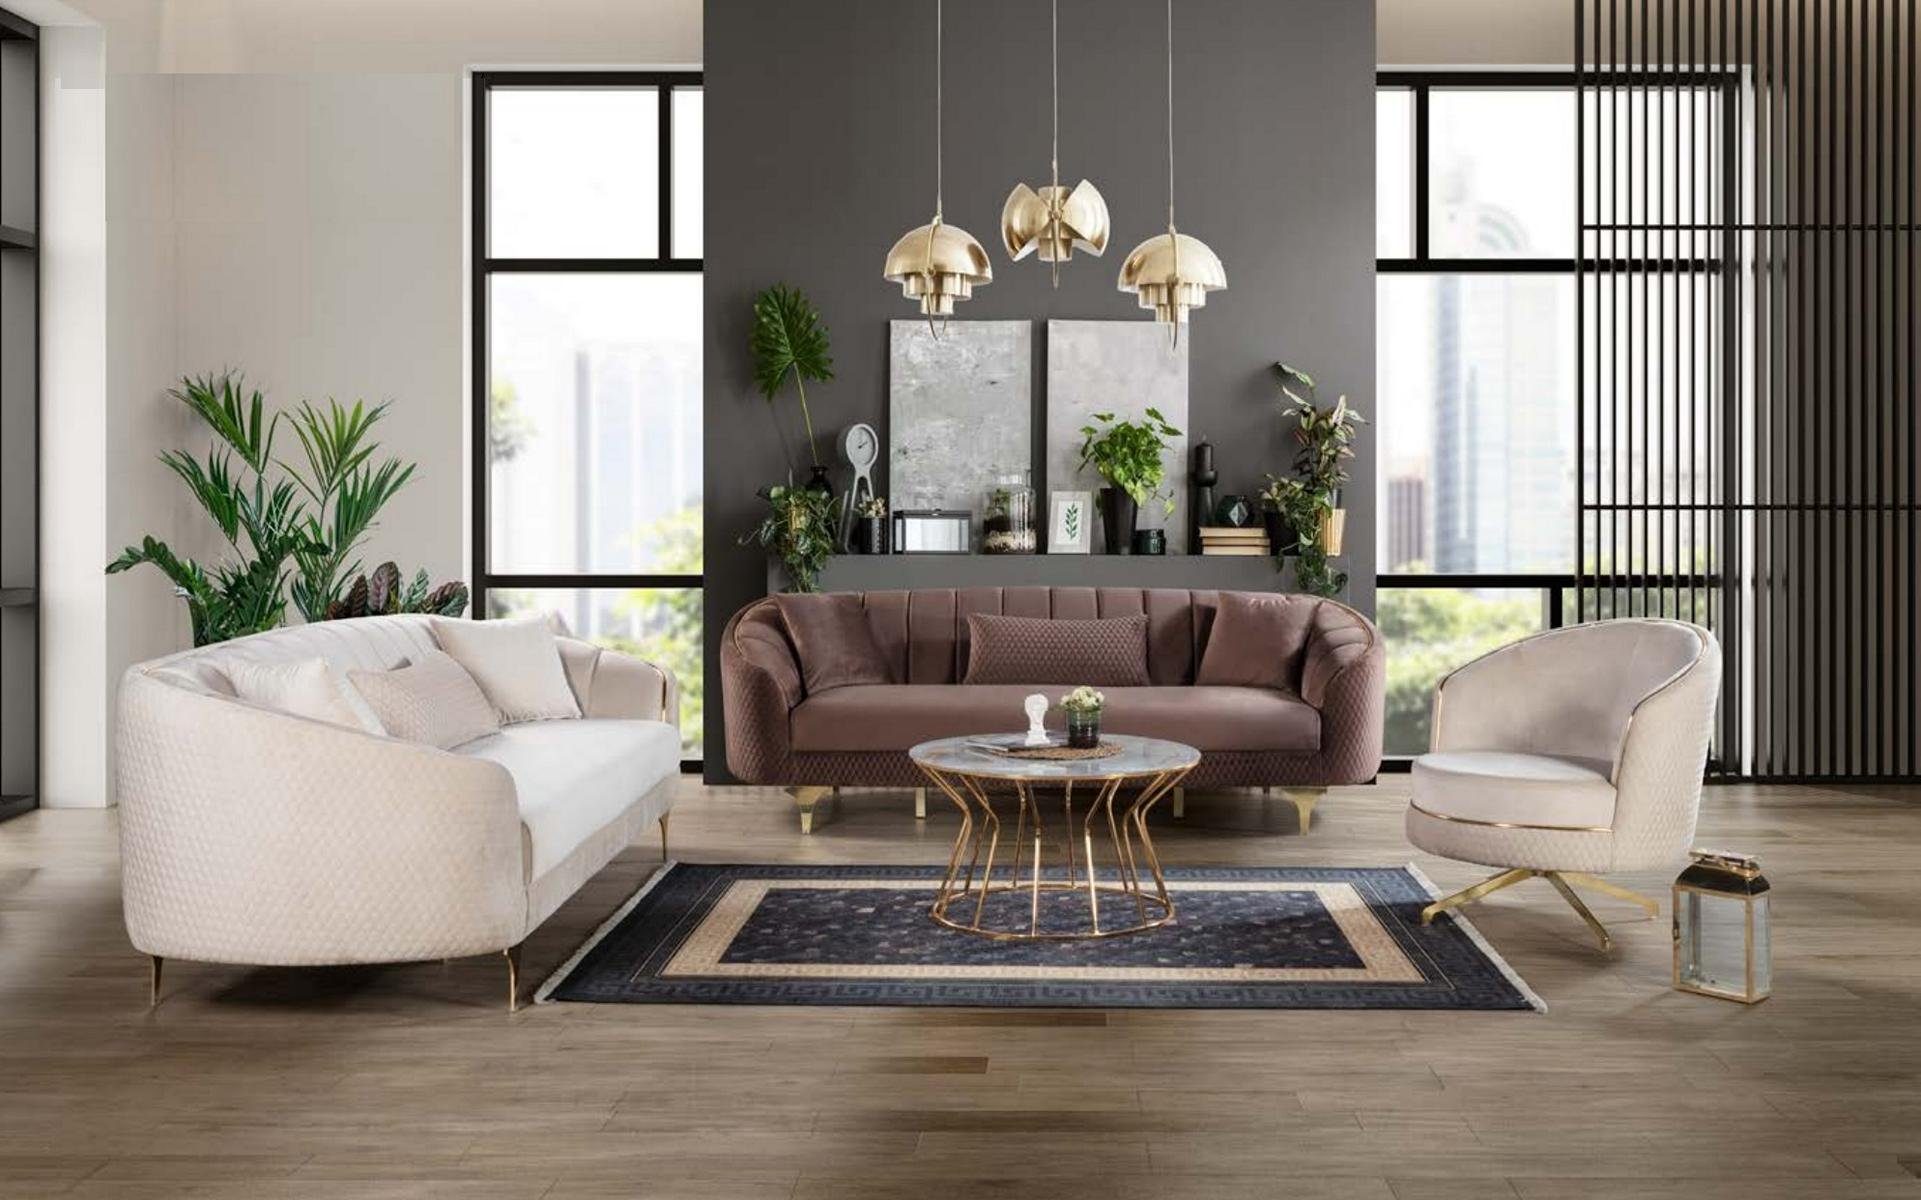 JVmoebel Sofa Luxus Wohnzimmer Couch Sitzgarnitur Braun Beige Set 3+3+1, Made in Europe